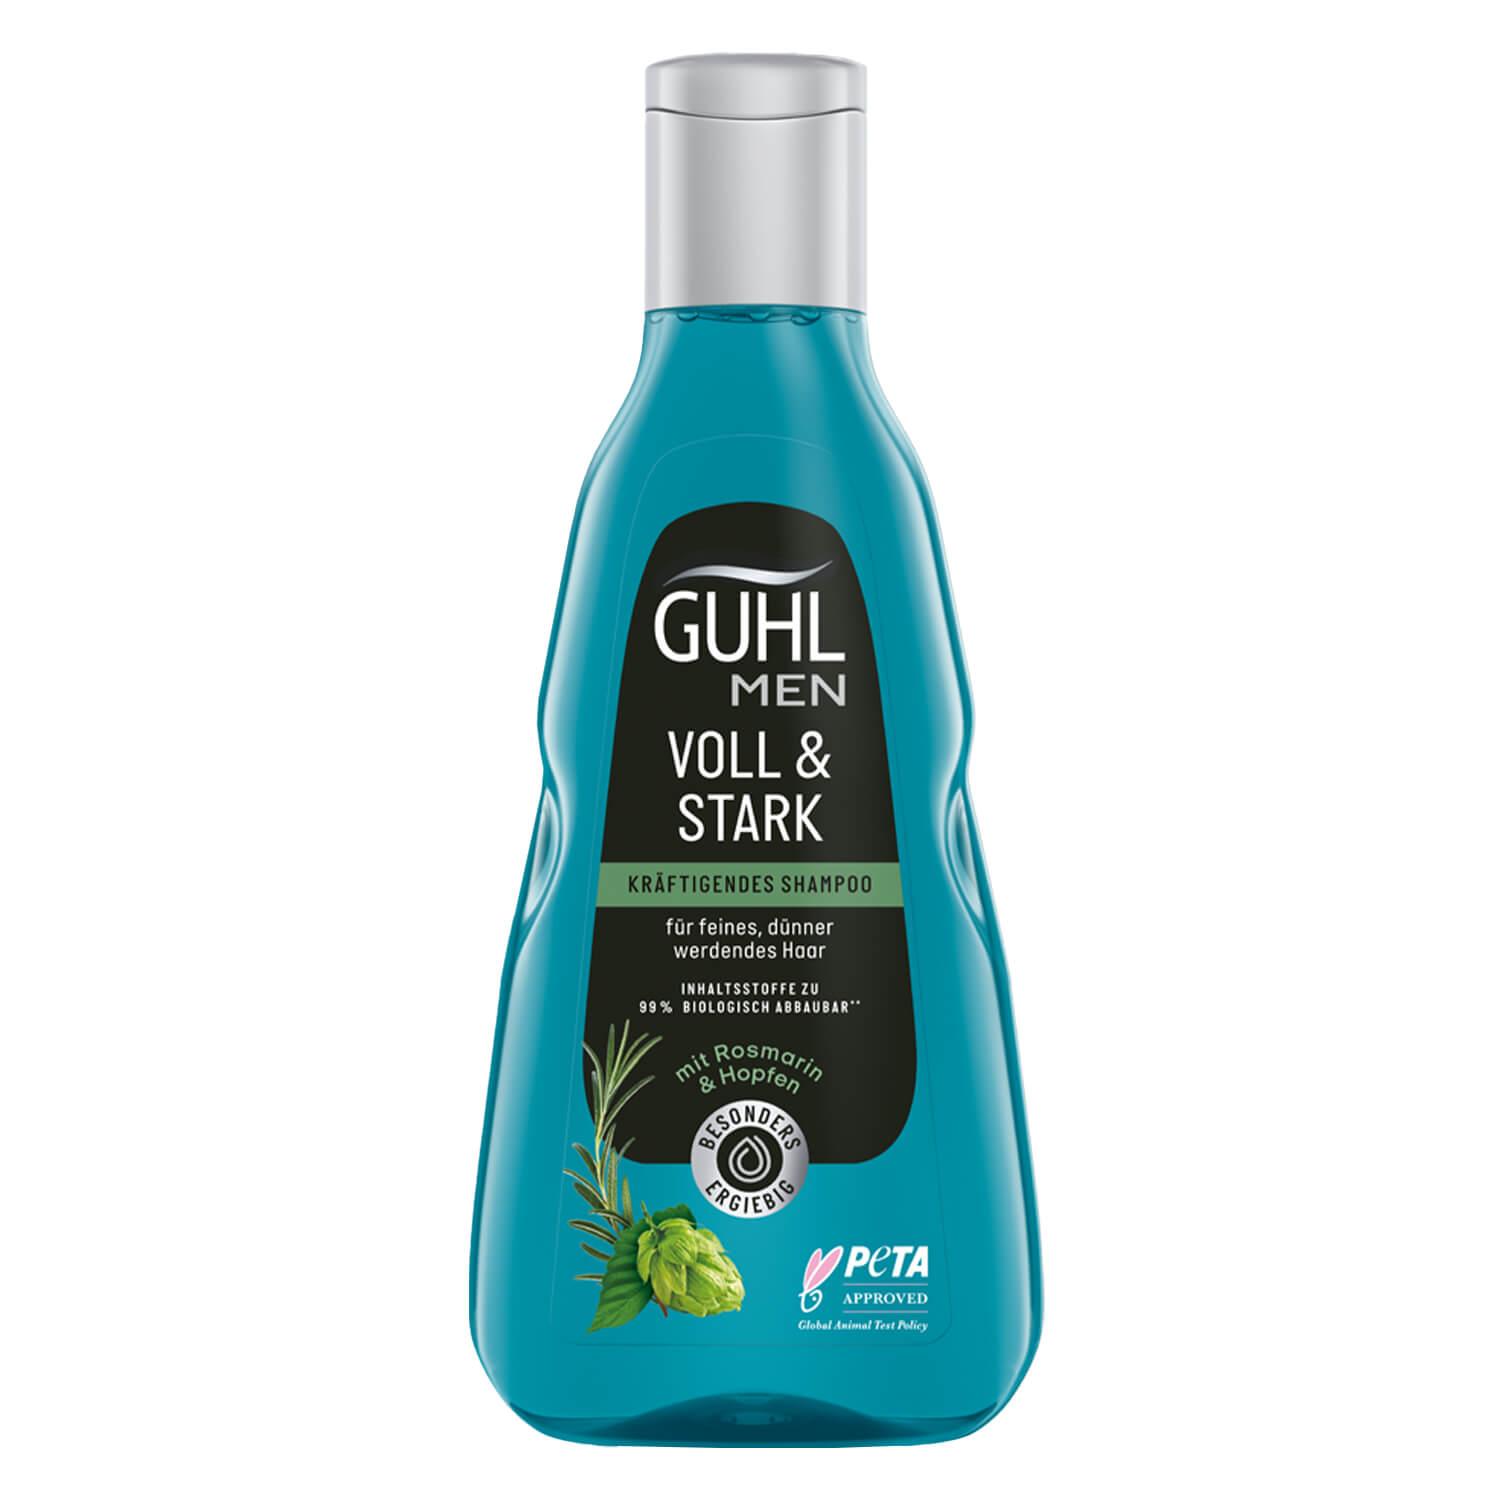 GUHL - MEN VOLL & STARK Kräftigendes Shampoo